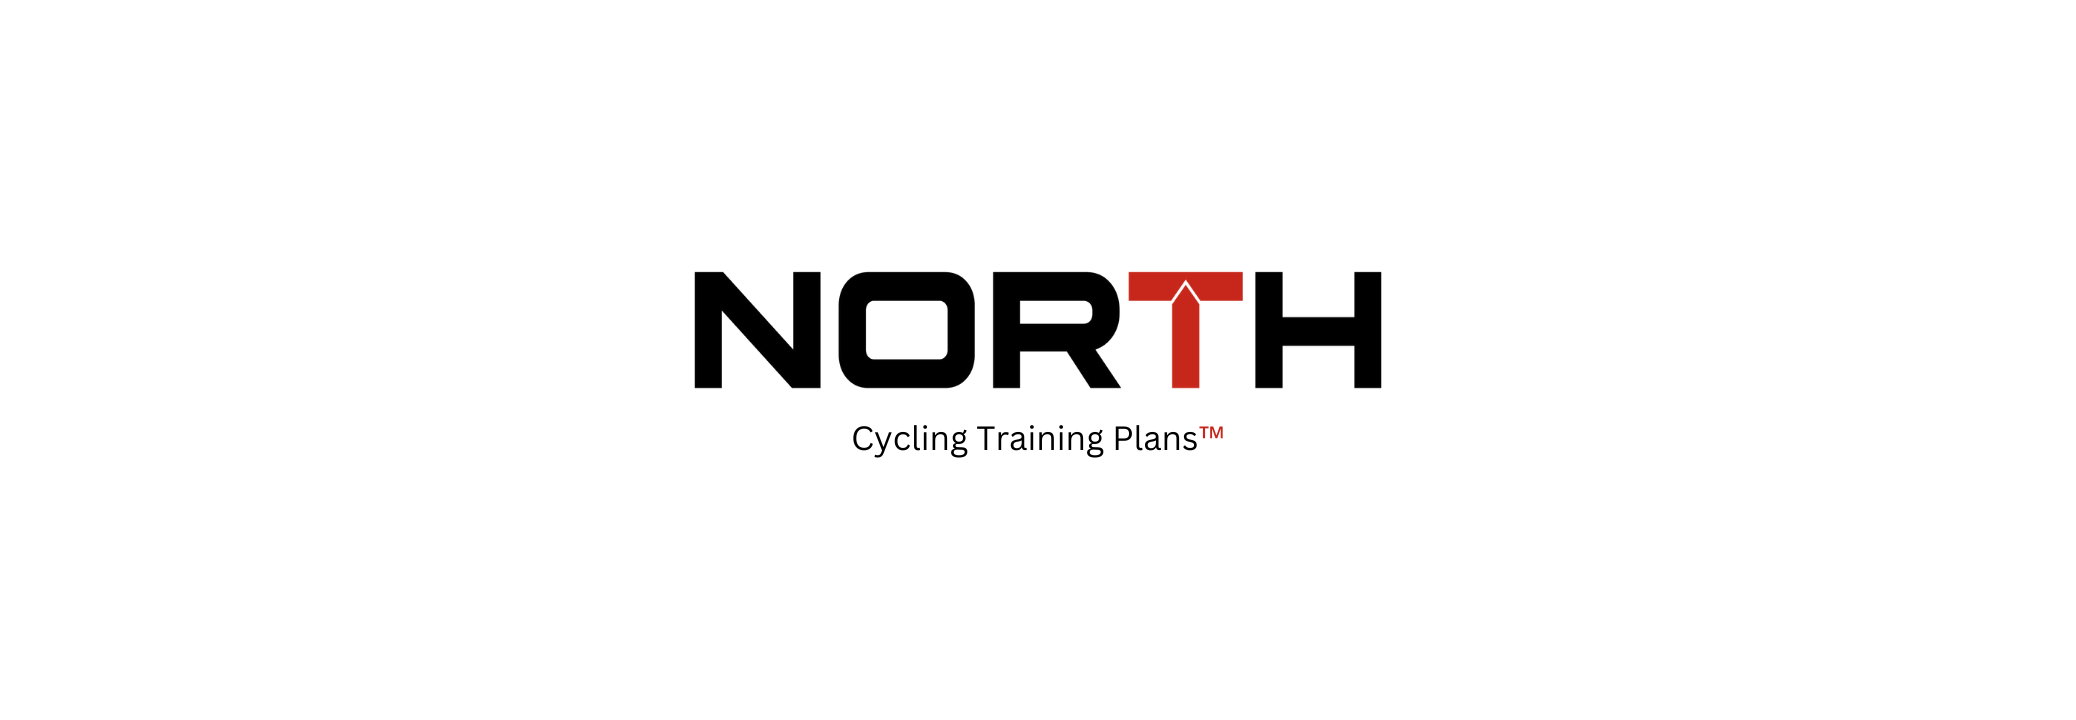 Cycle coaching